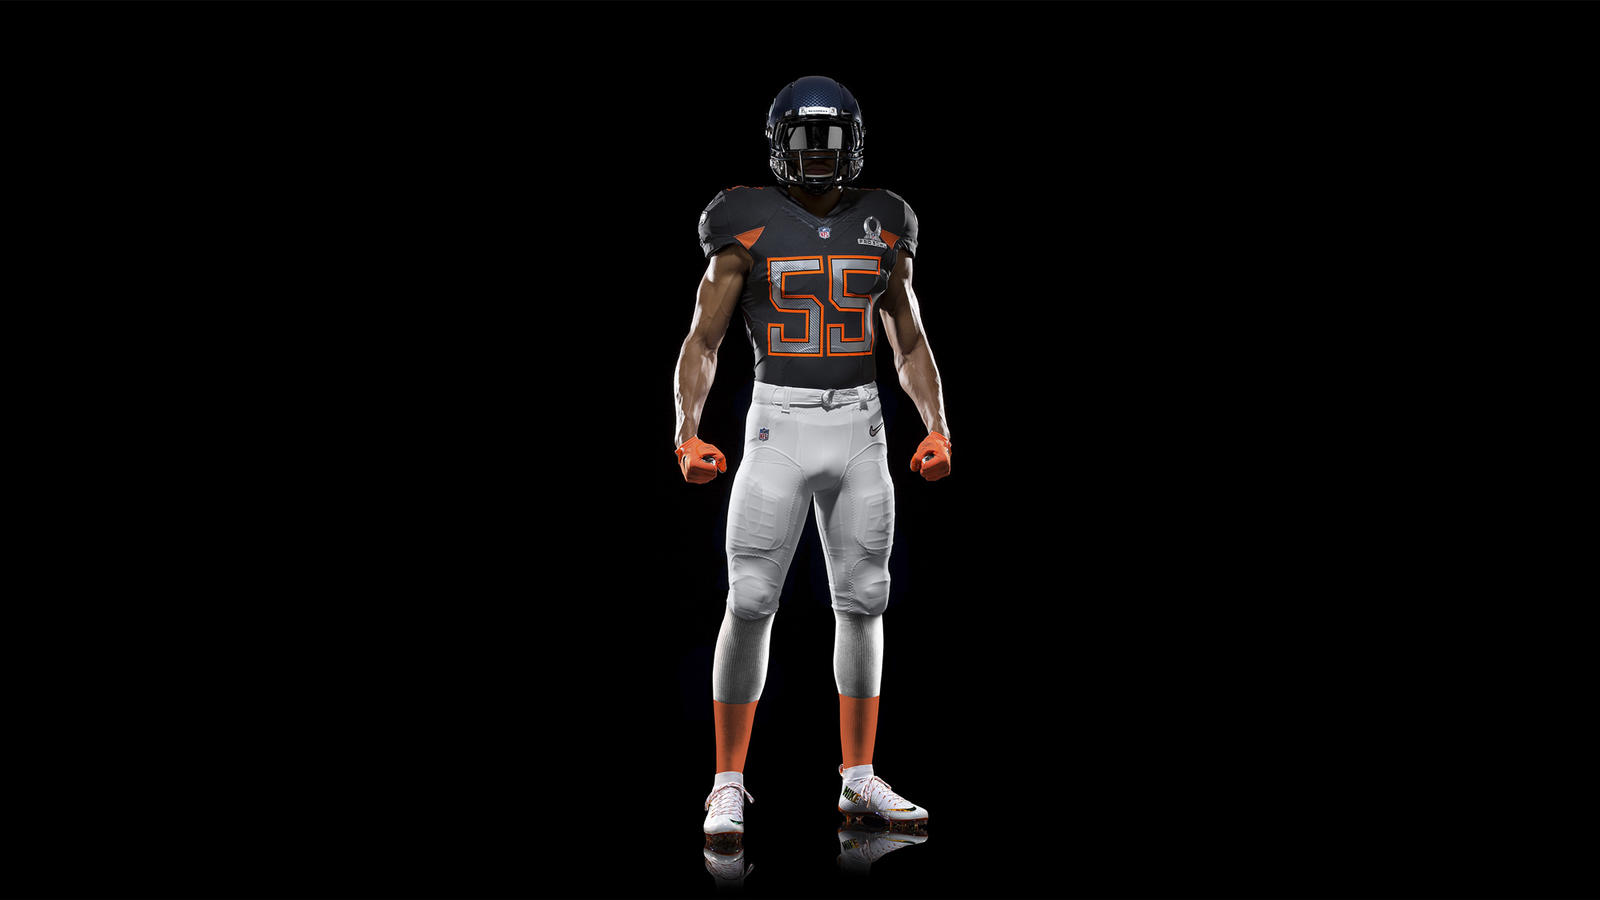 Nike Pro Bowl uniforms